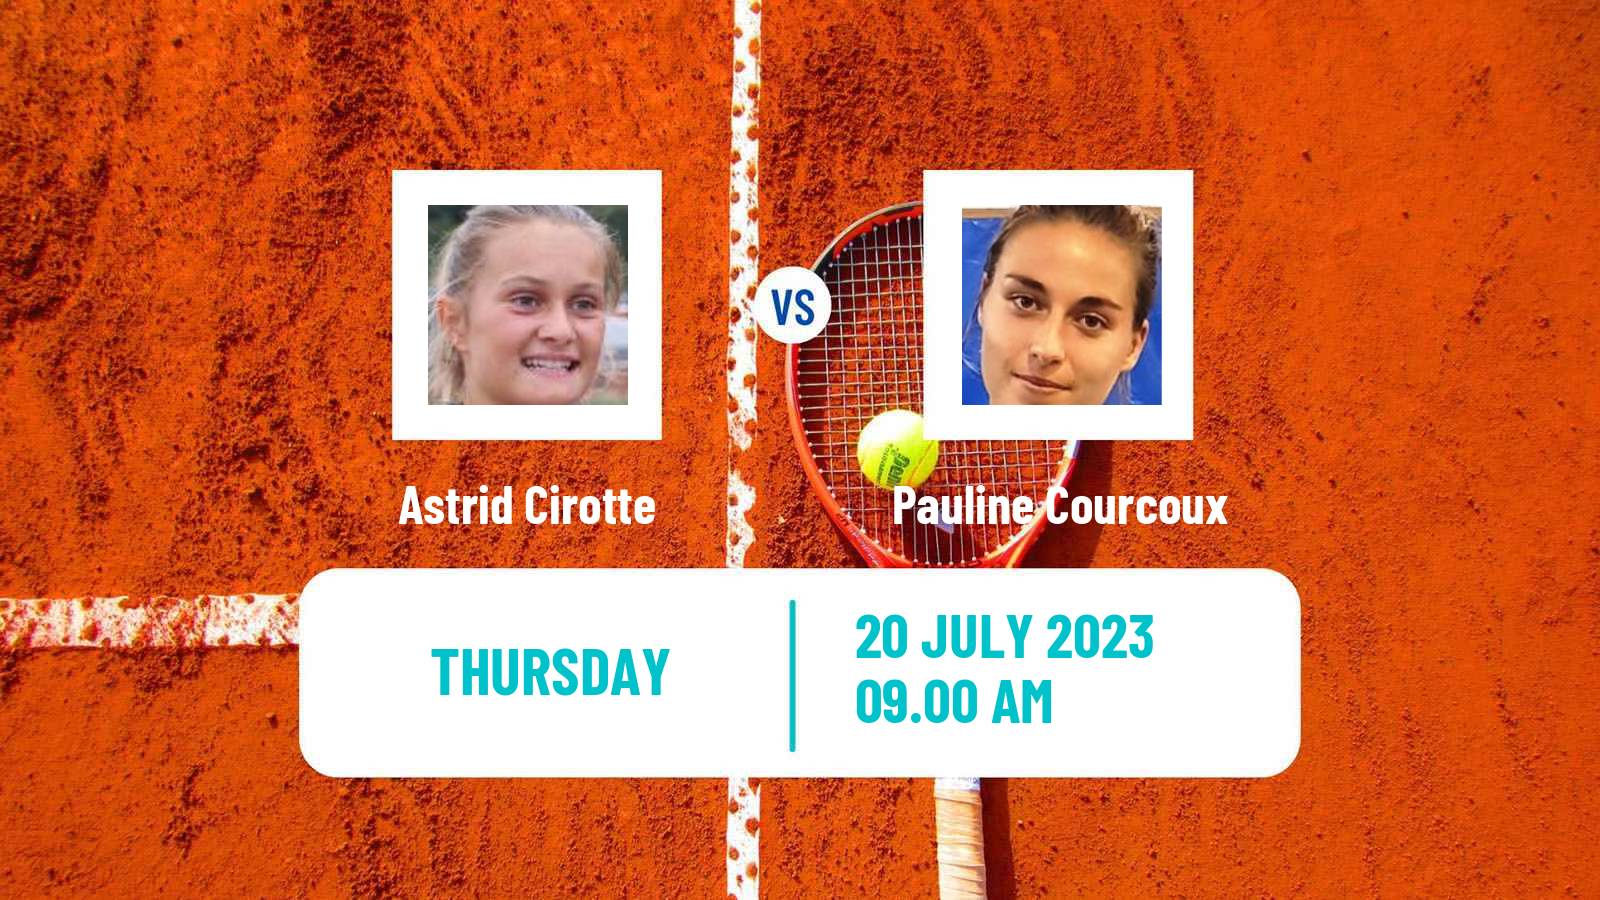 Tennis ITF W15 Les Contamines Montjoie Women Astrid Cirotte - Pauline Courcoux